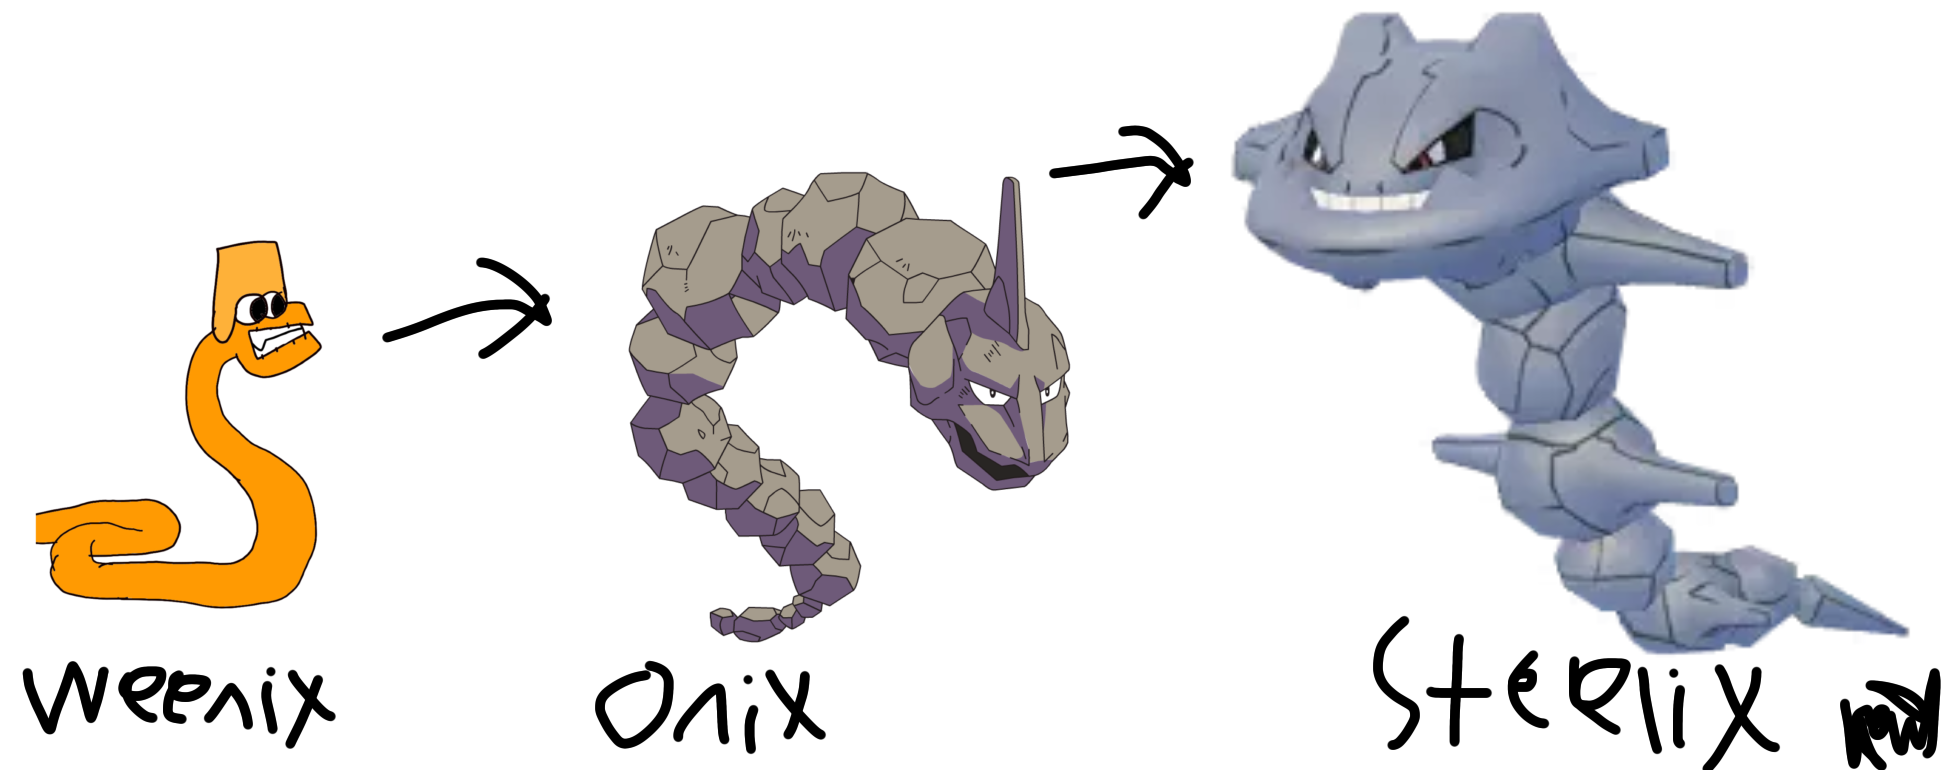 Pokemon Steelix and onix